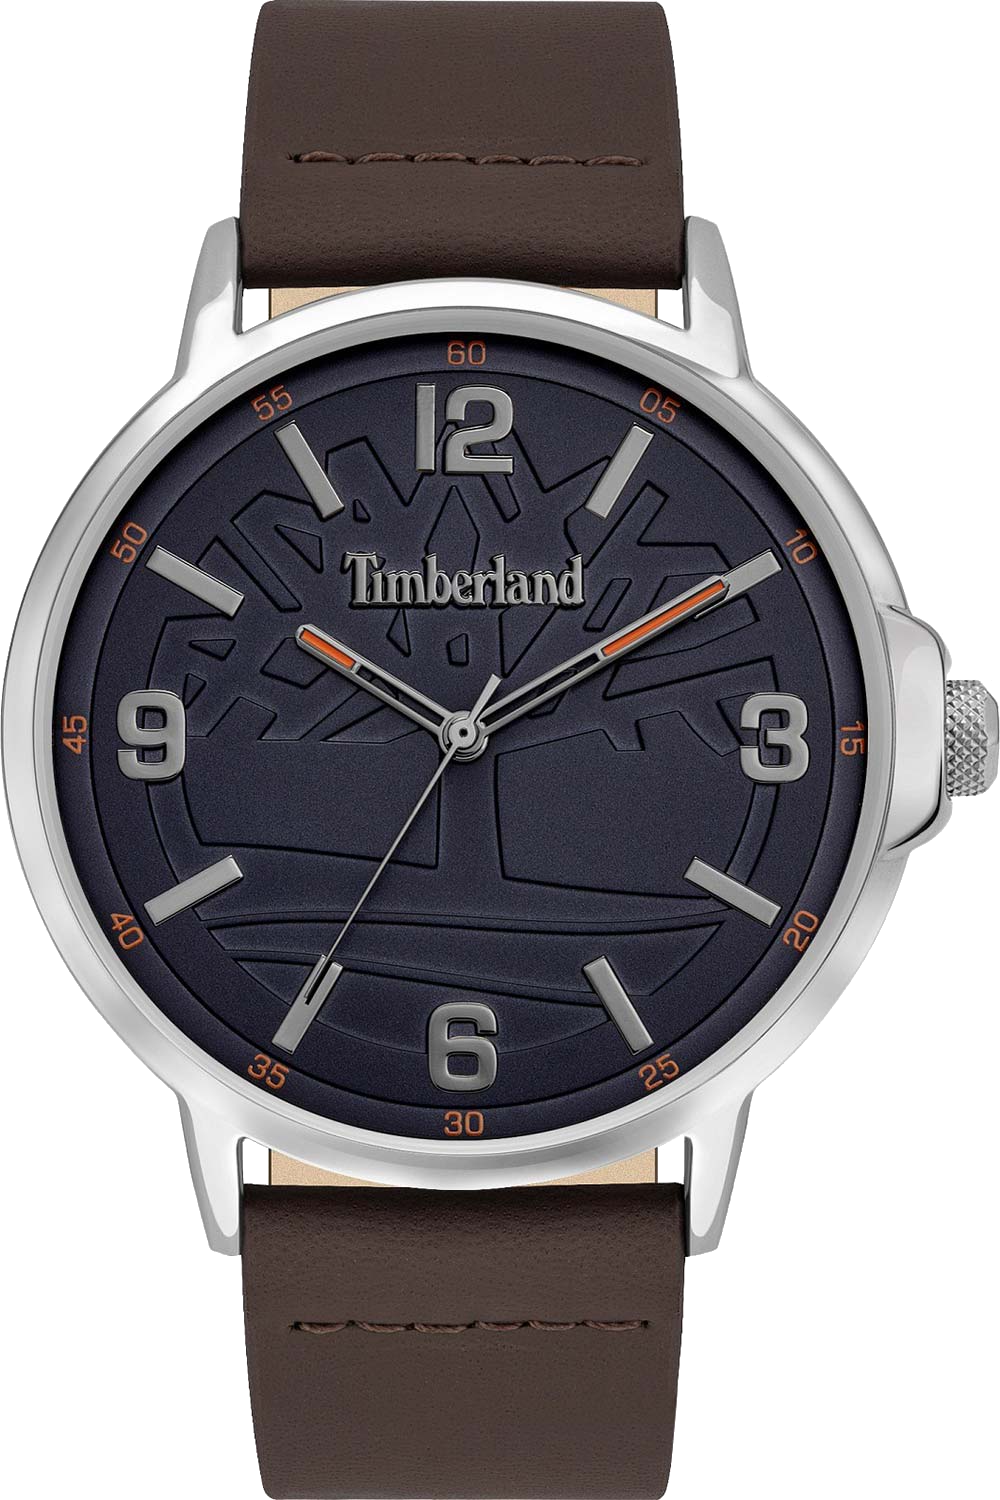 Мужские часы Timberland Timberland TBL.16011JYS/03